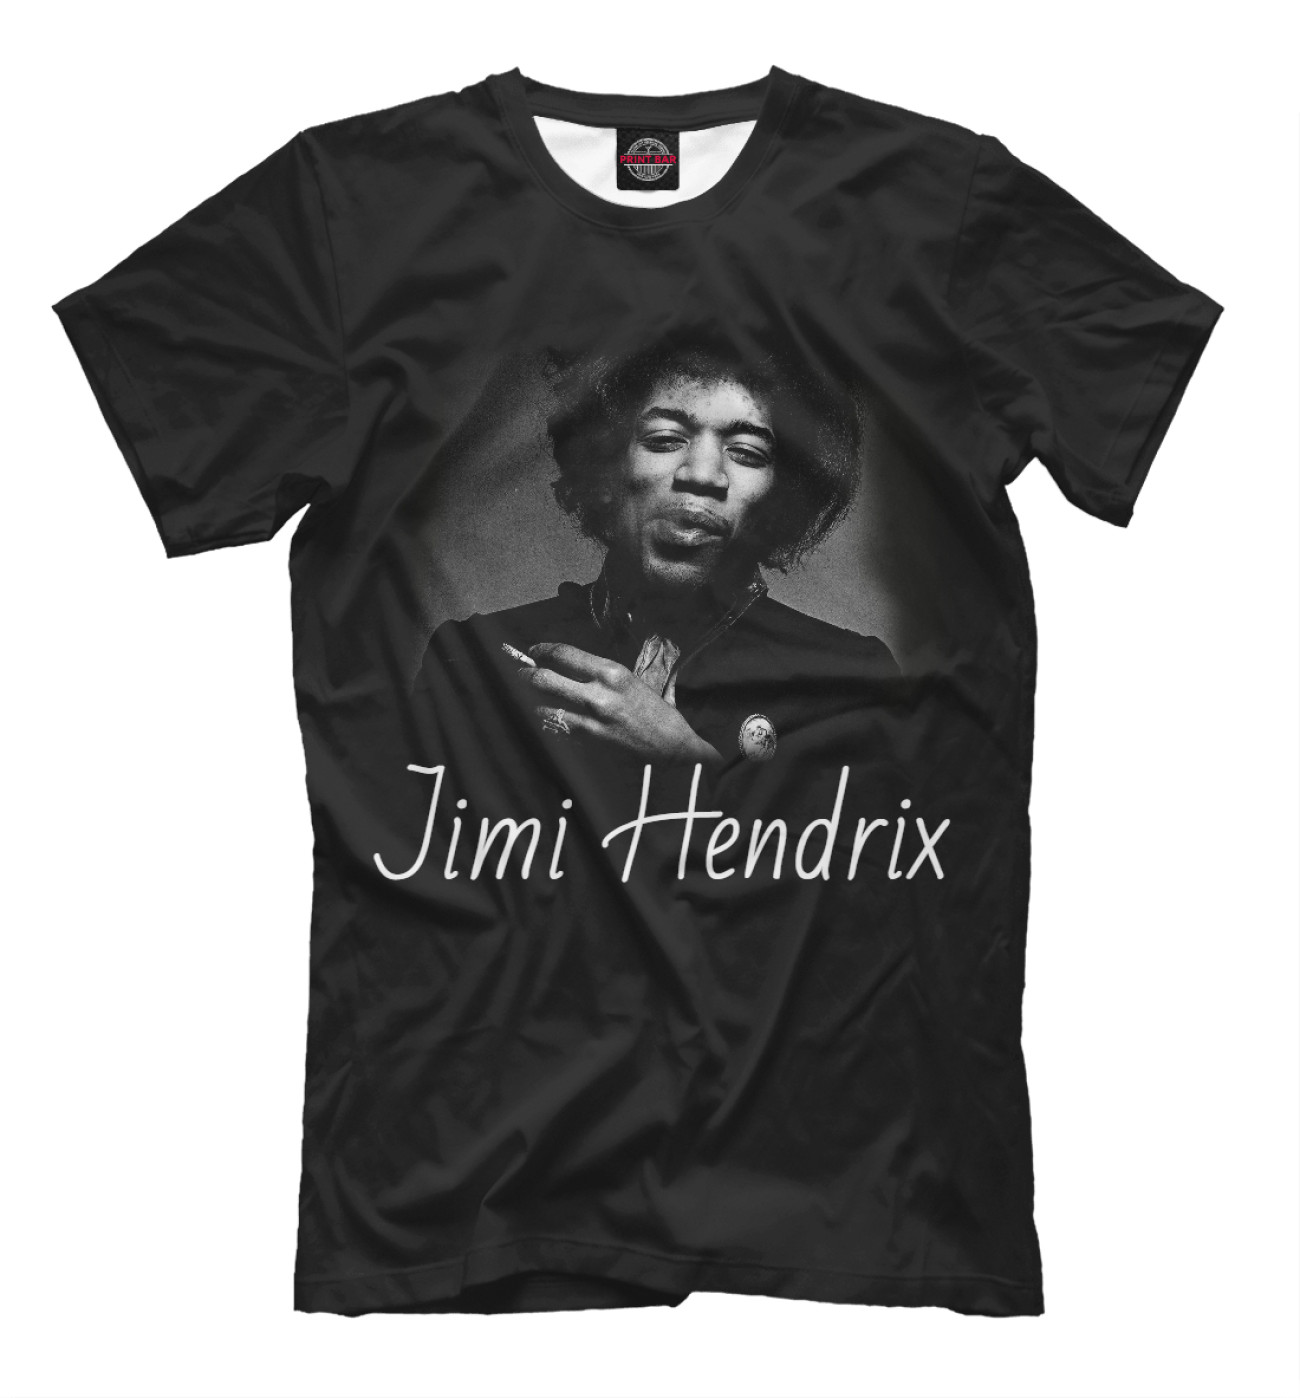 Мужская Футболка Jimi Hendrix, артикул: MZK-530914-fut-2